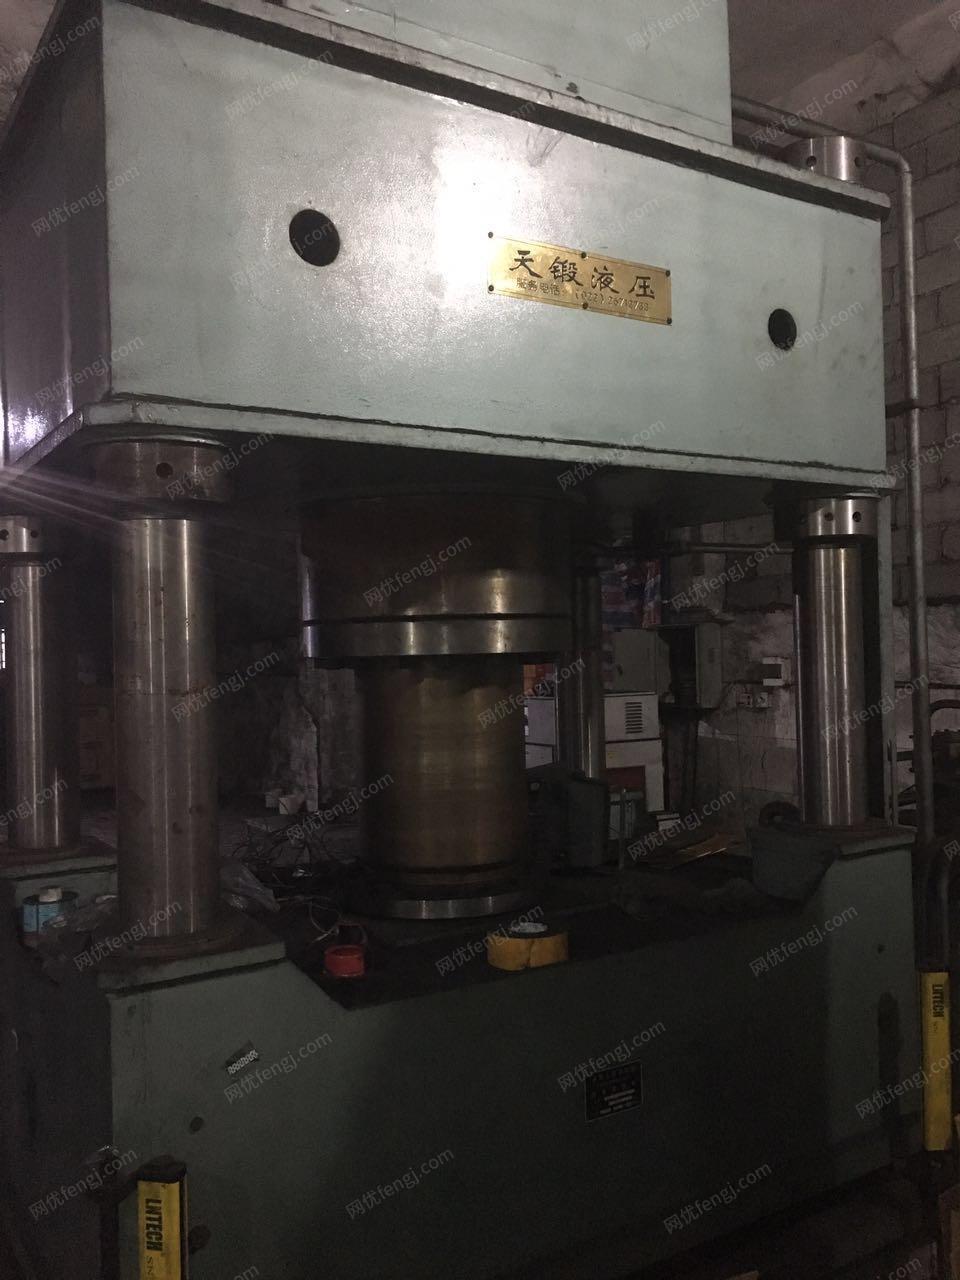 化工厂抵债出售1台315四柱液压机、1台QX-80HM12微波干燥机（有图片）